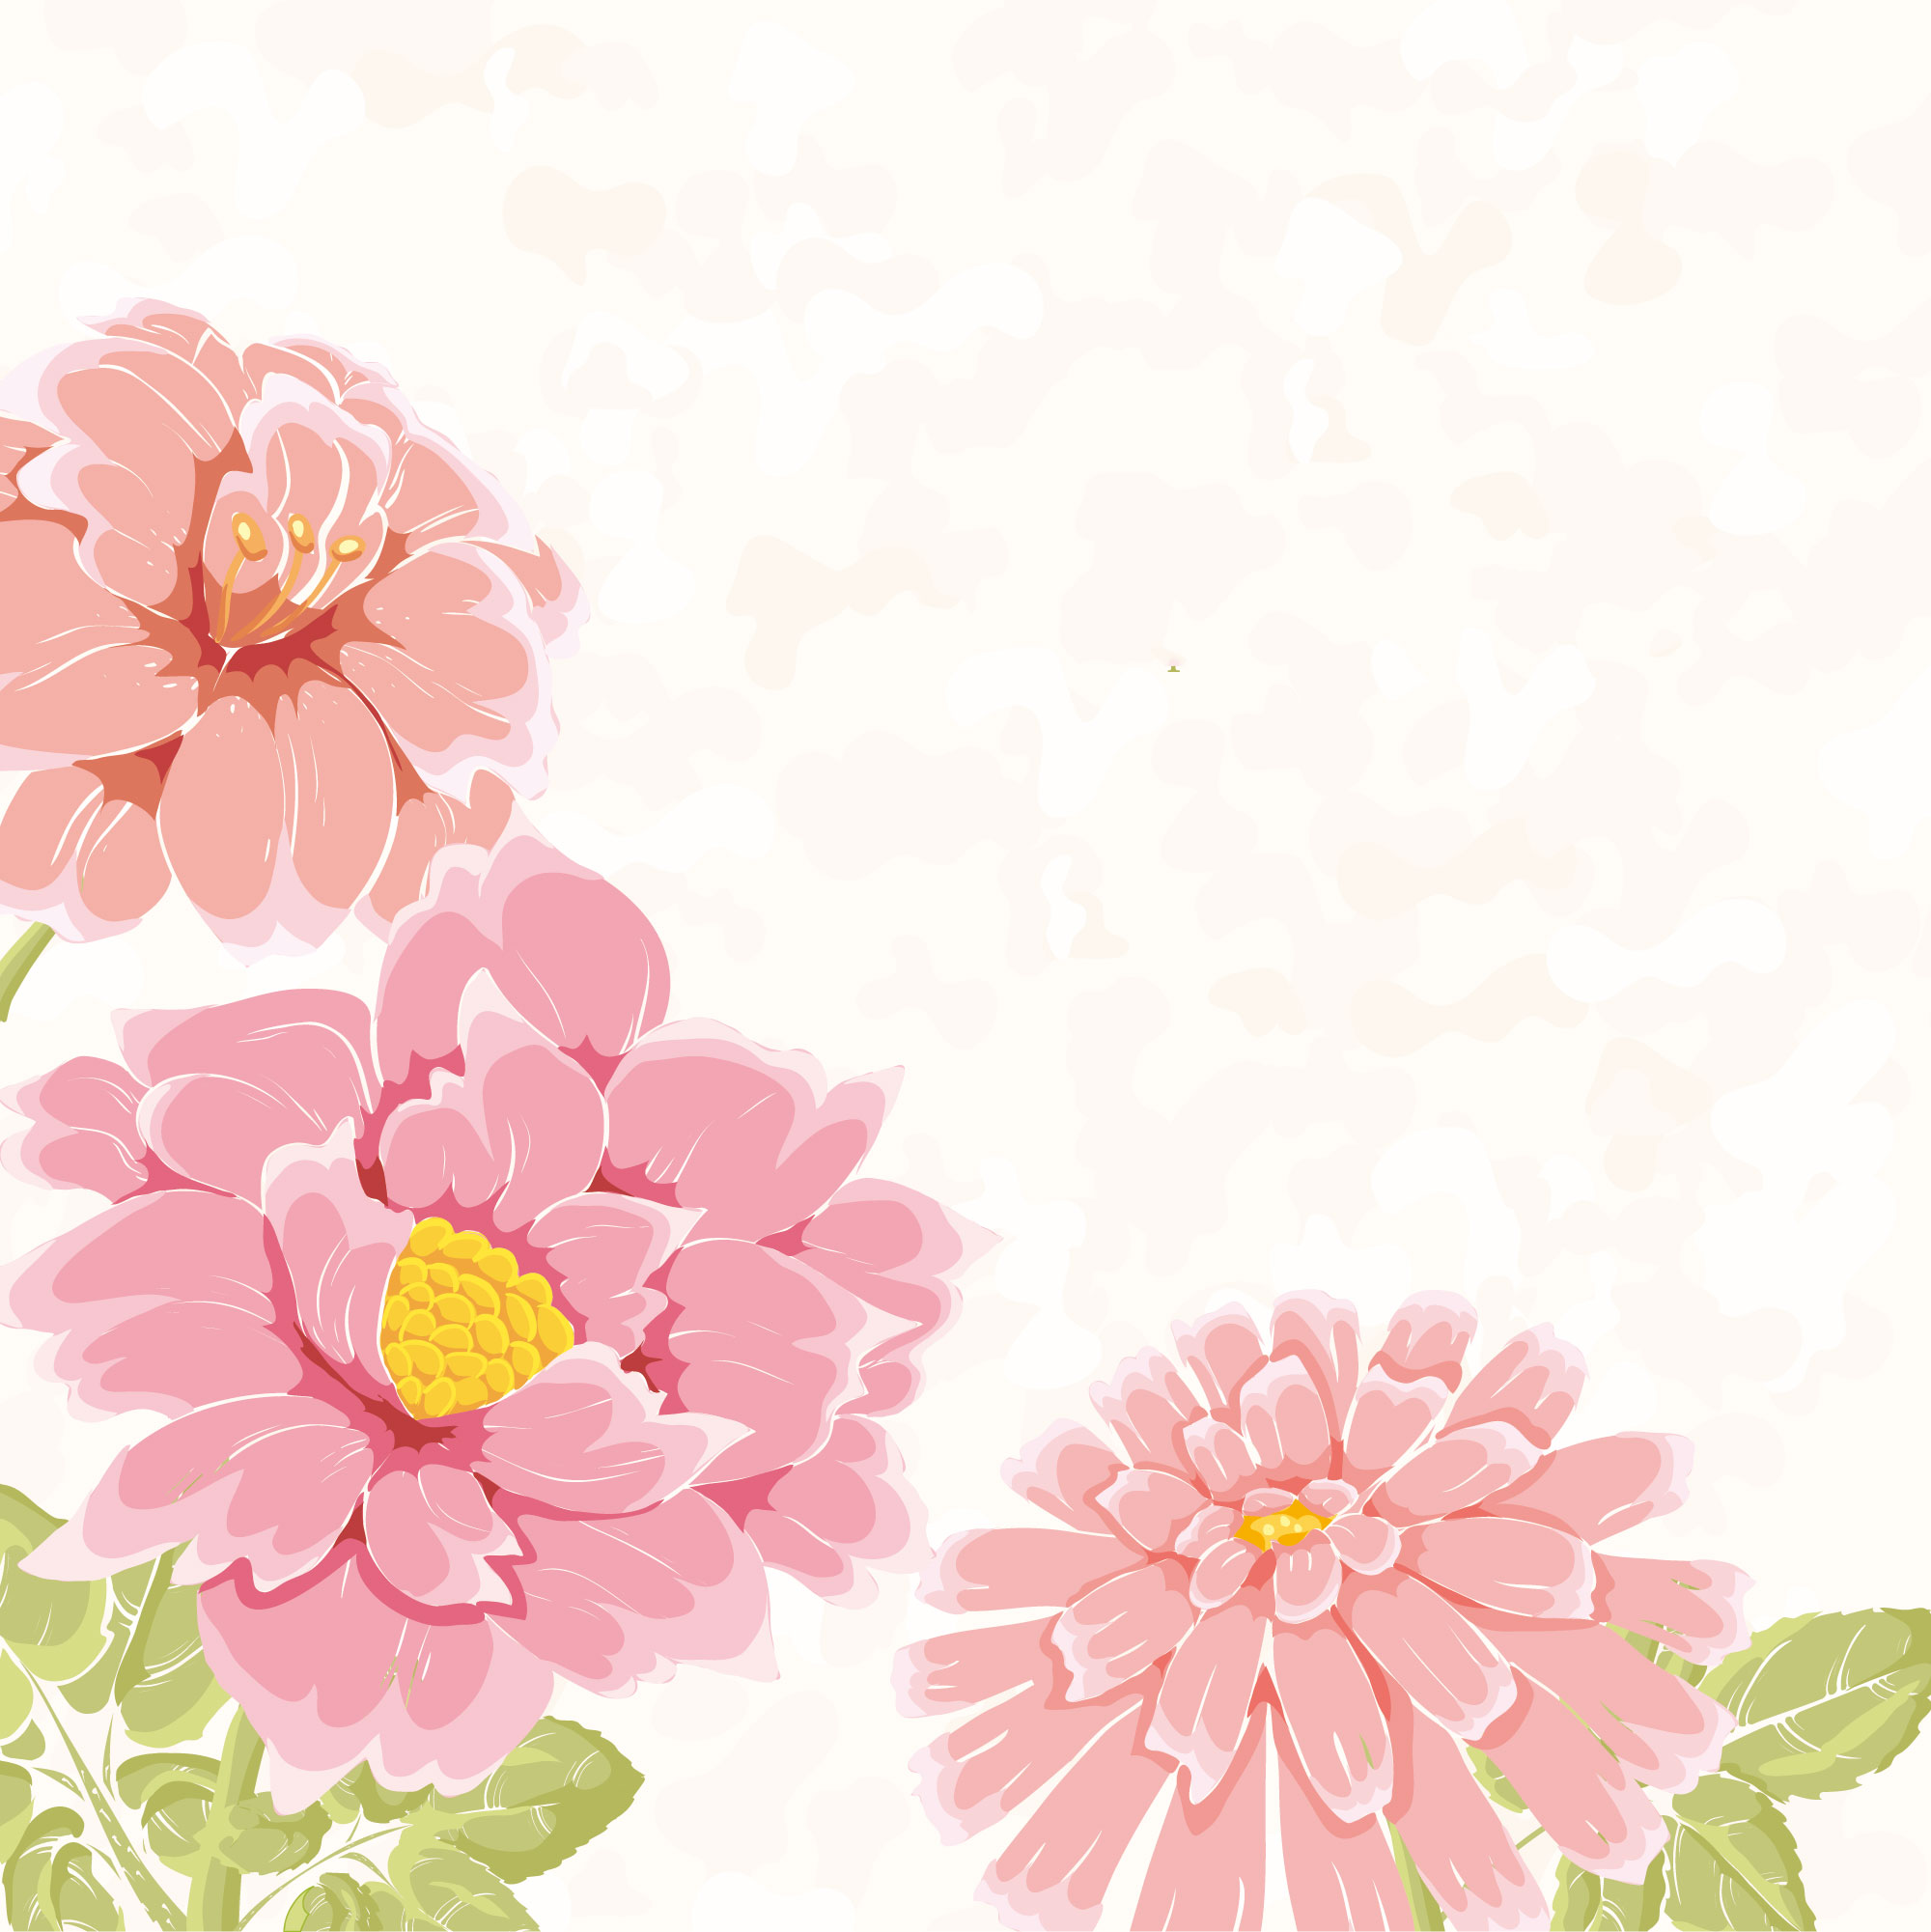 牡丹 ぼたん のイラスト 画像no 9 壁紙 牡丹の花 無料のフリー素材集 百花繚乱